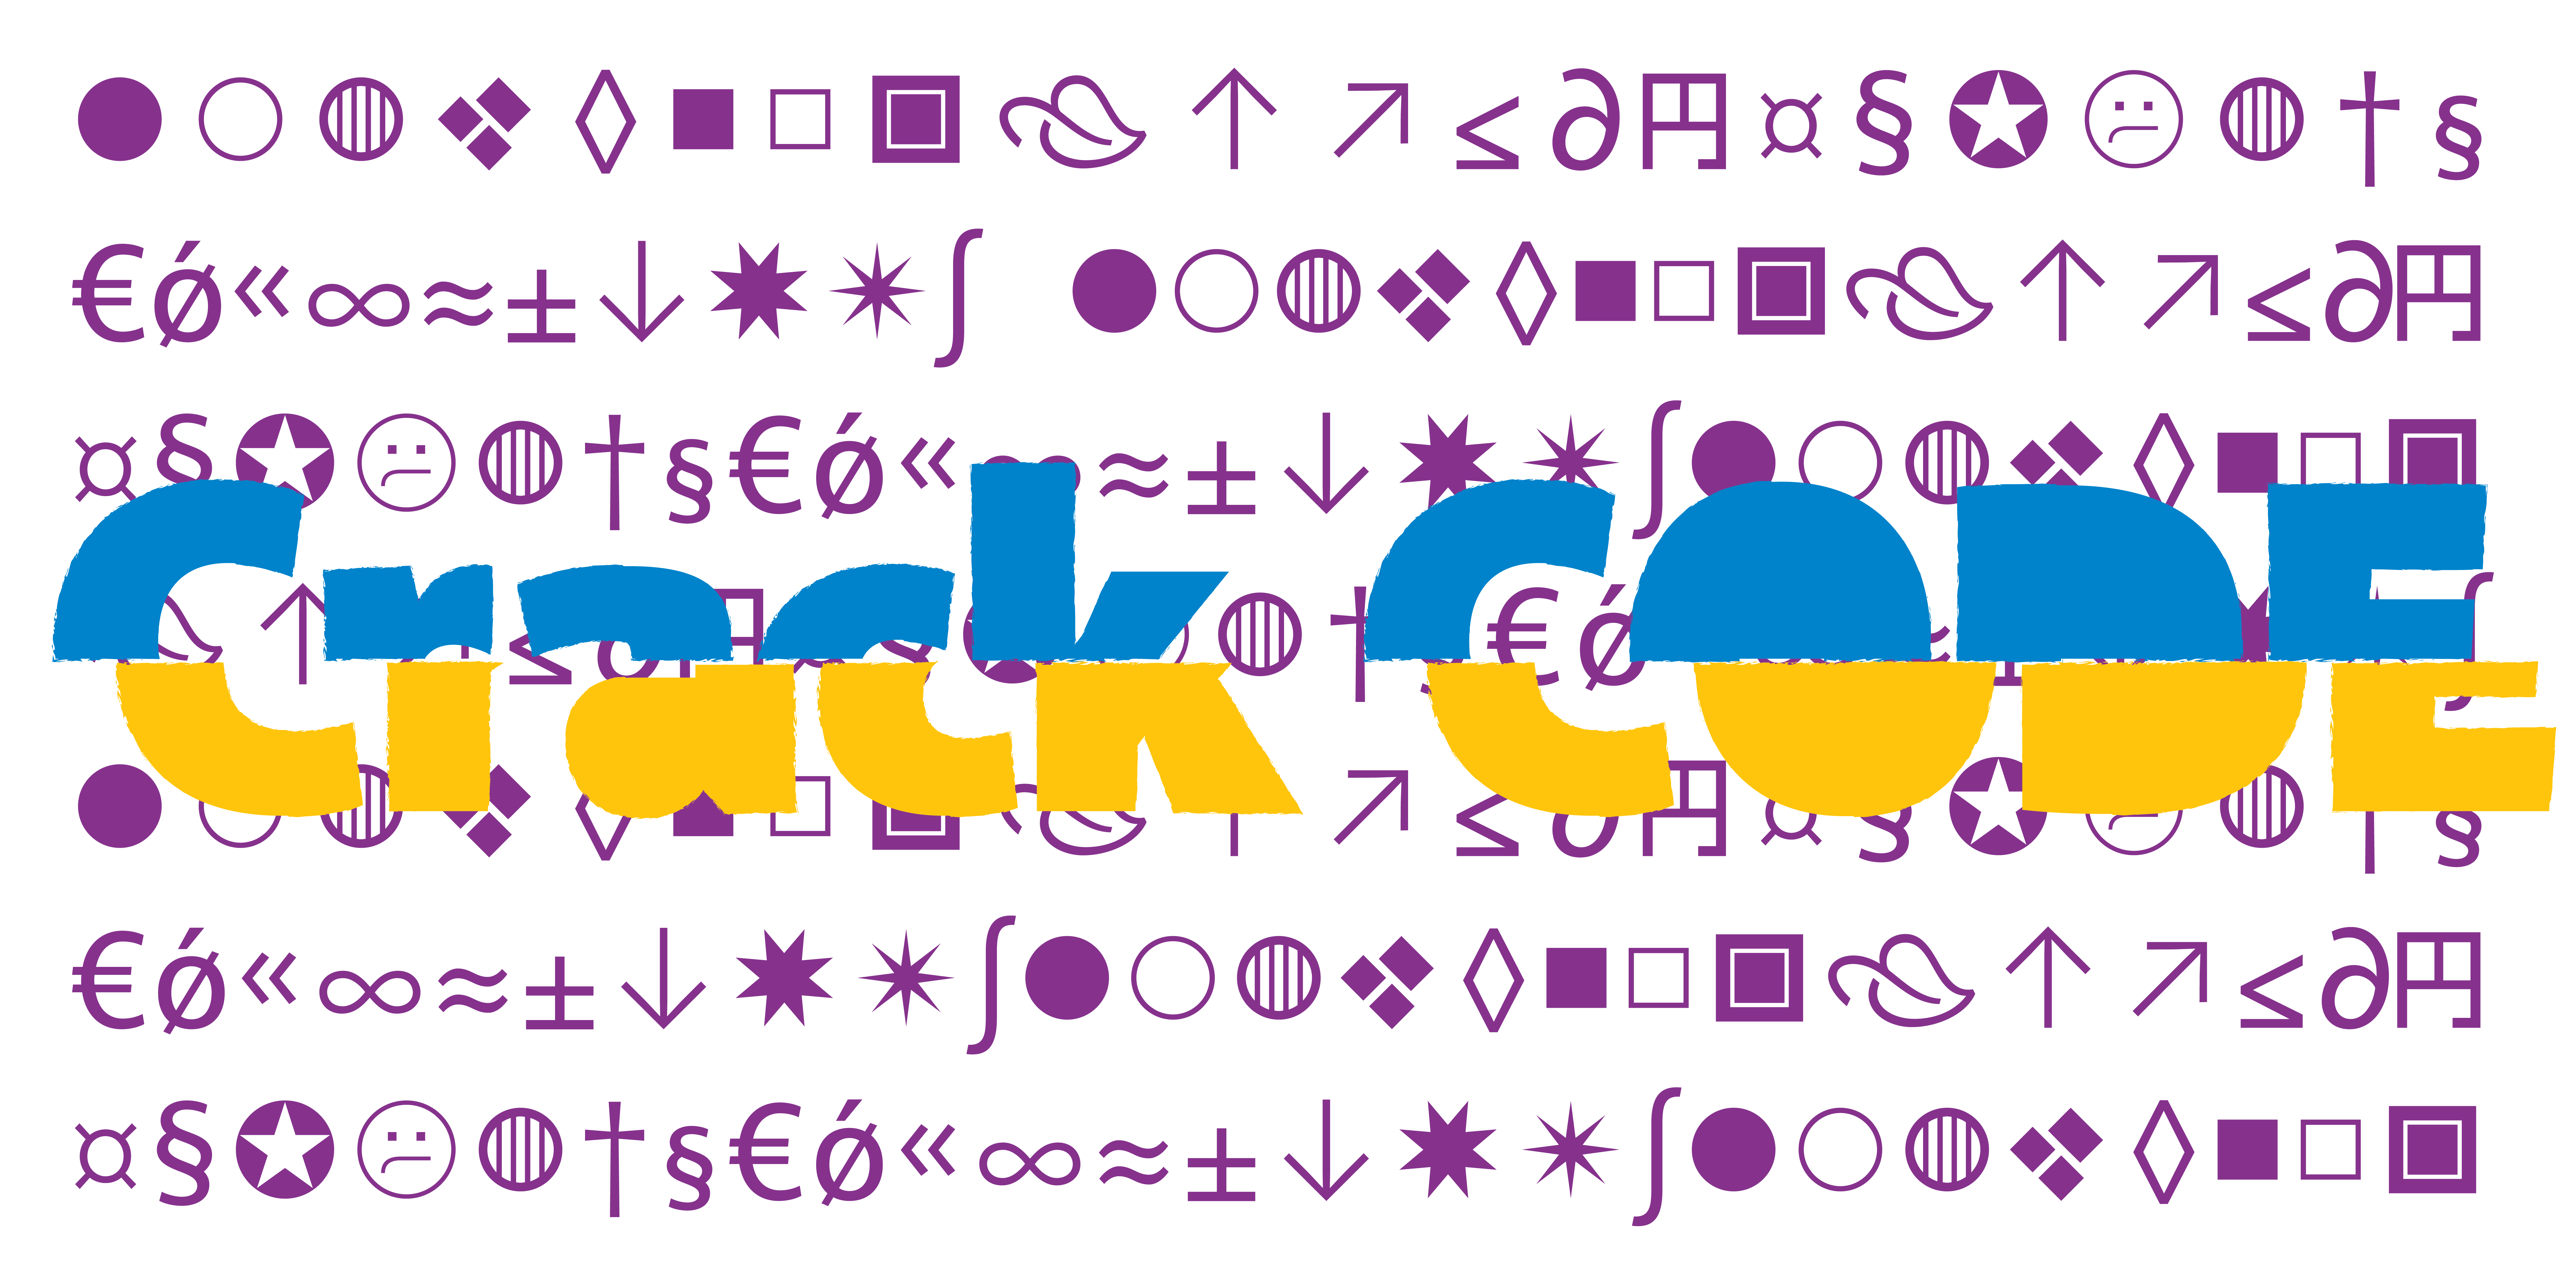 Card displaying Akagi typeface in various styles